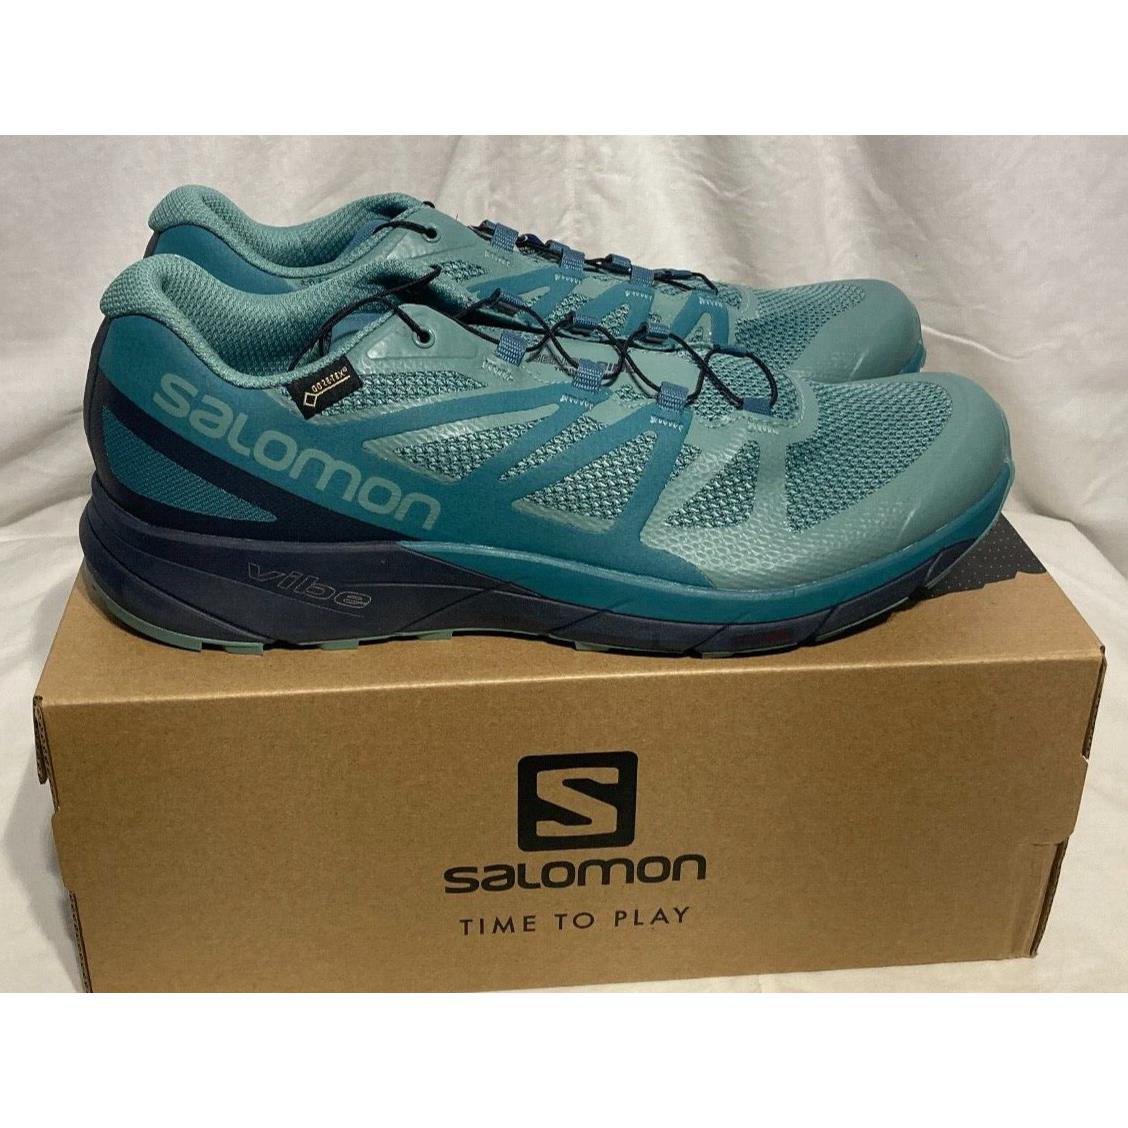 Salomon shoes  - Green 1